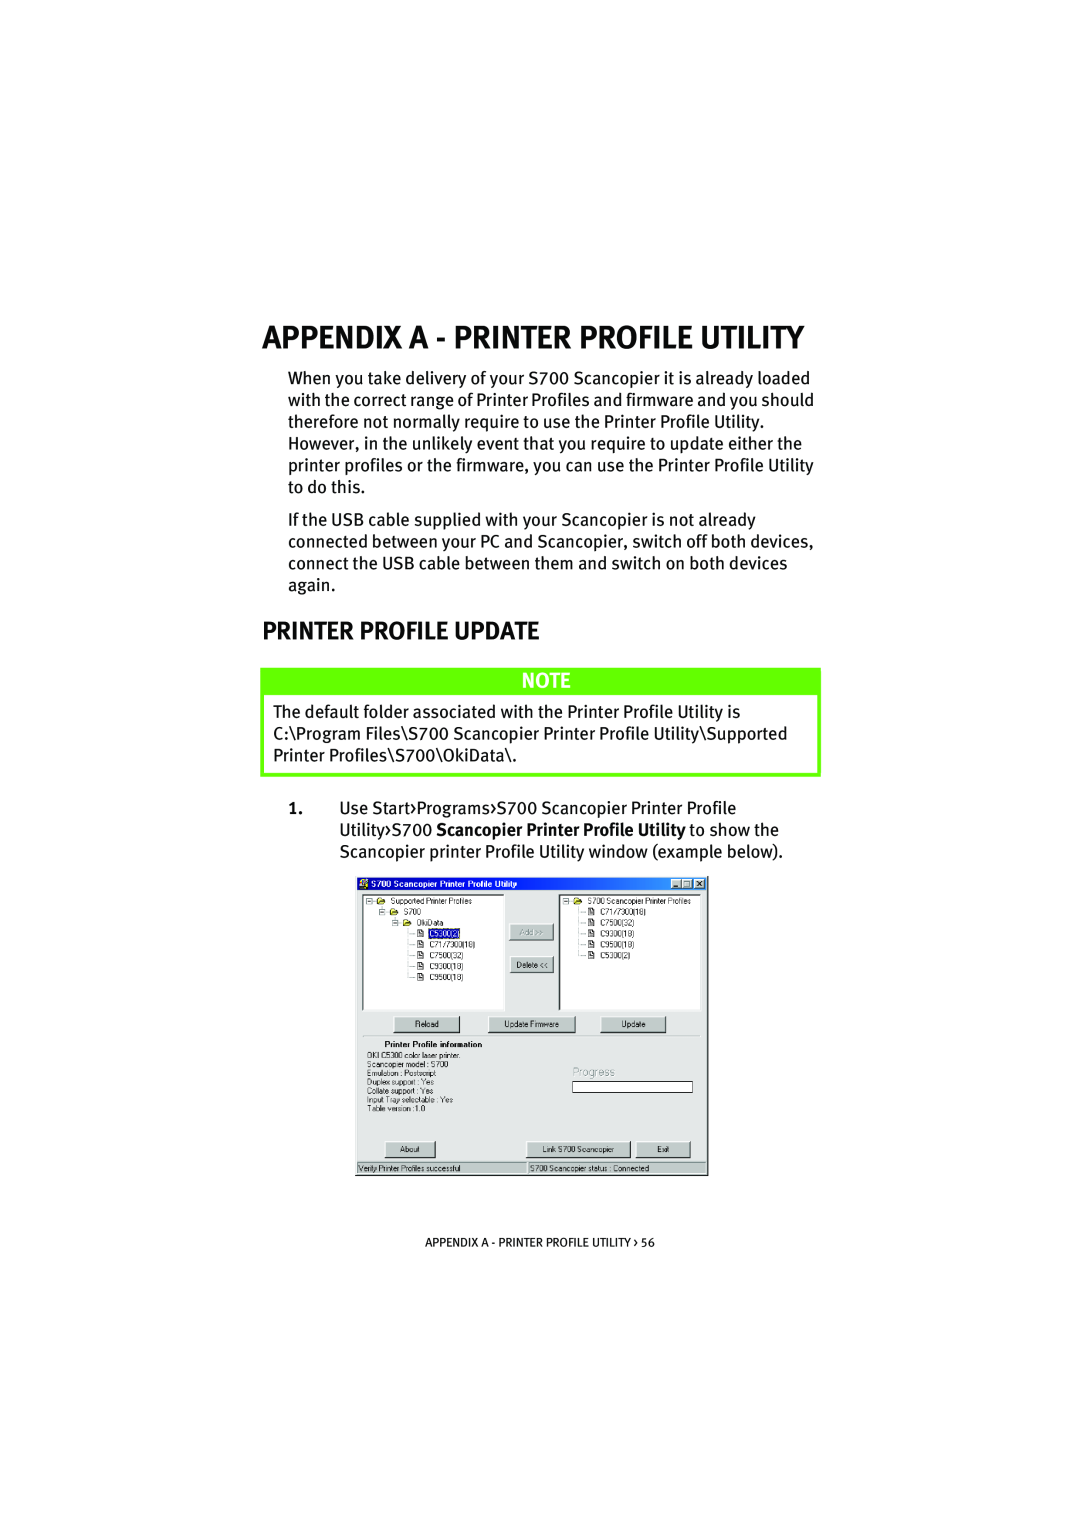 Oki S700 manual Appendix A - Printer Profile Utility, Printer Profile Update 